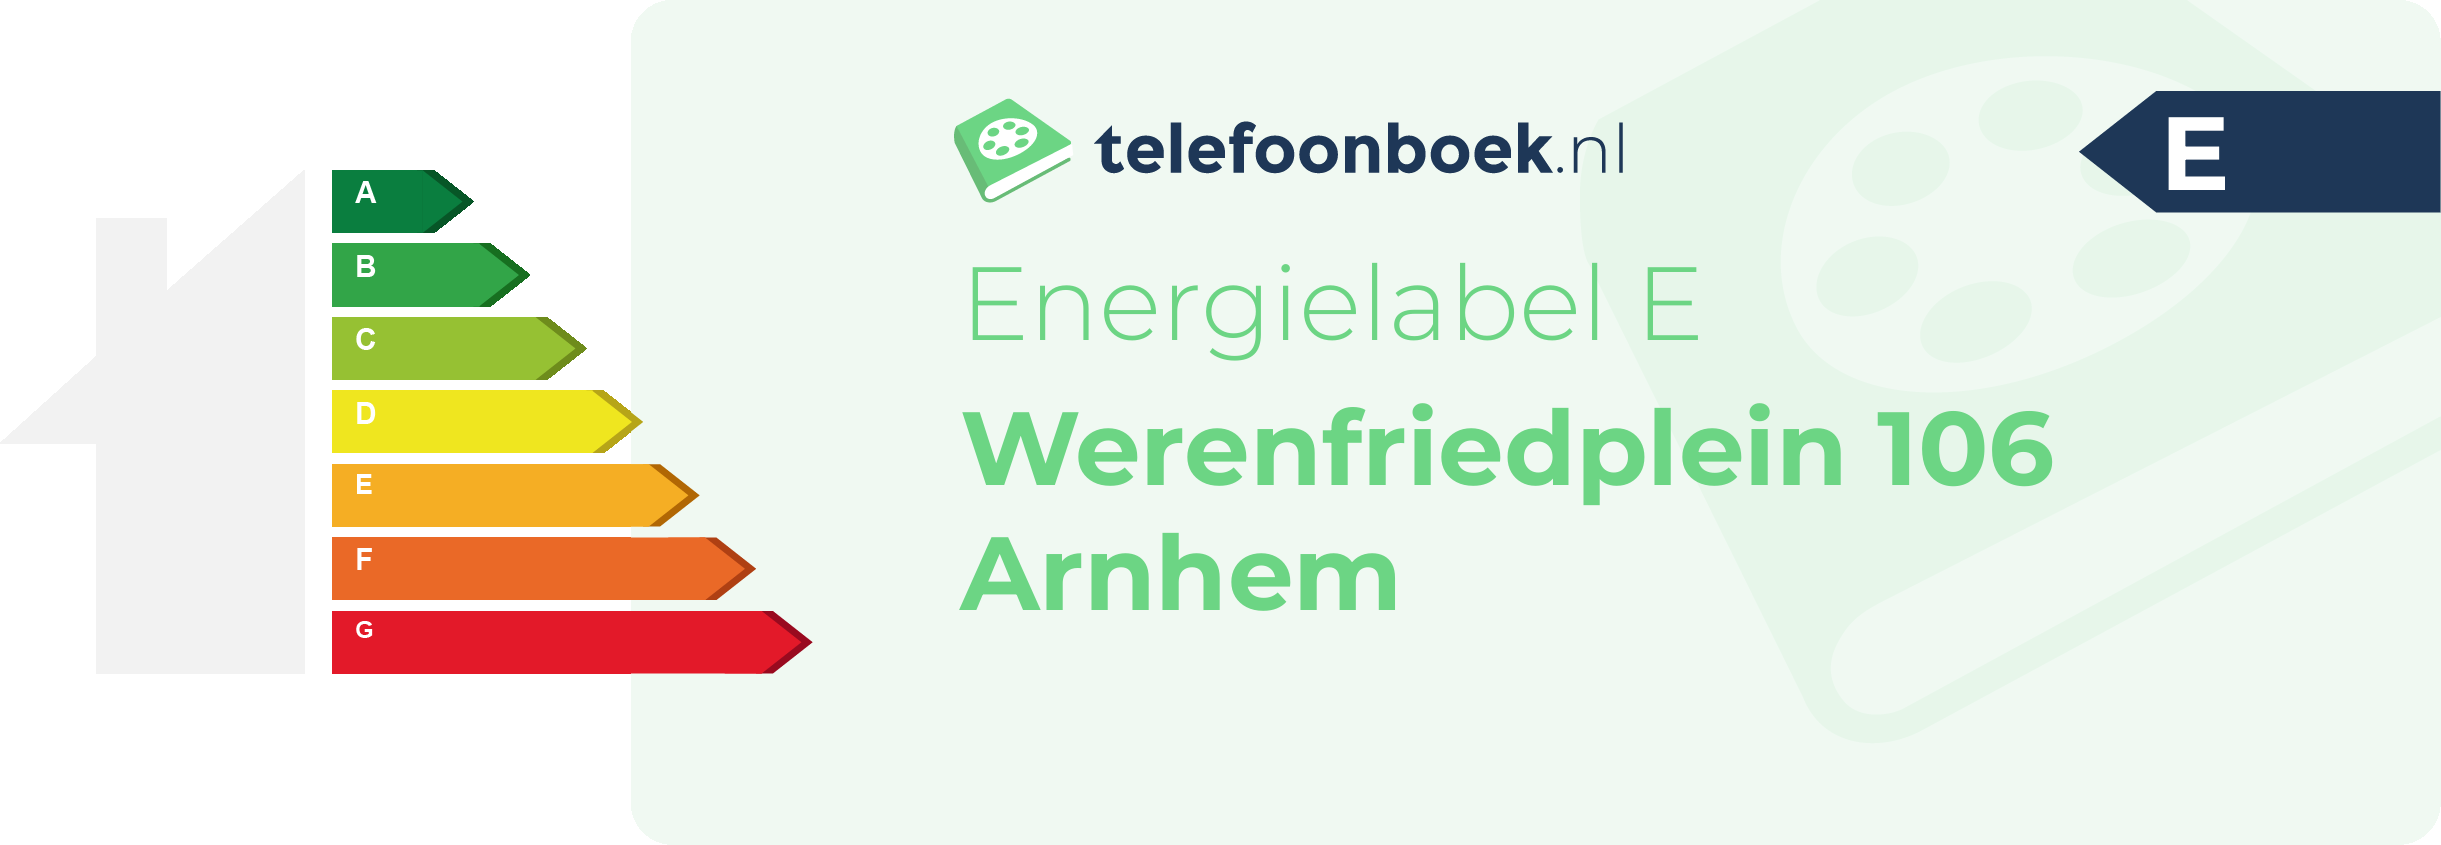 Energielabel Werenfriedplein 106 Arnhem